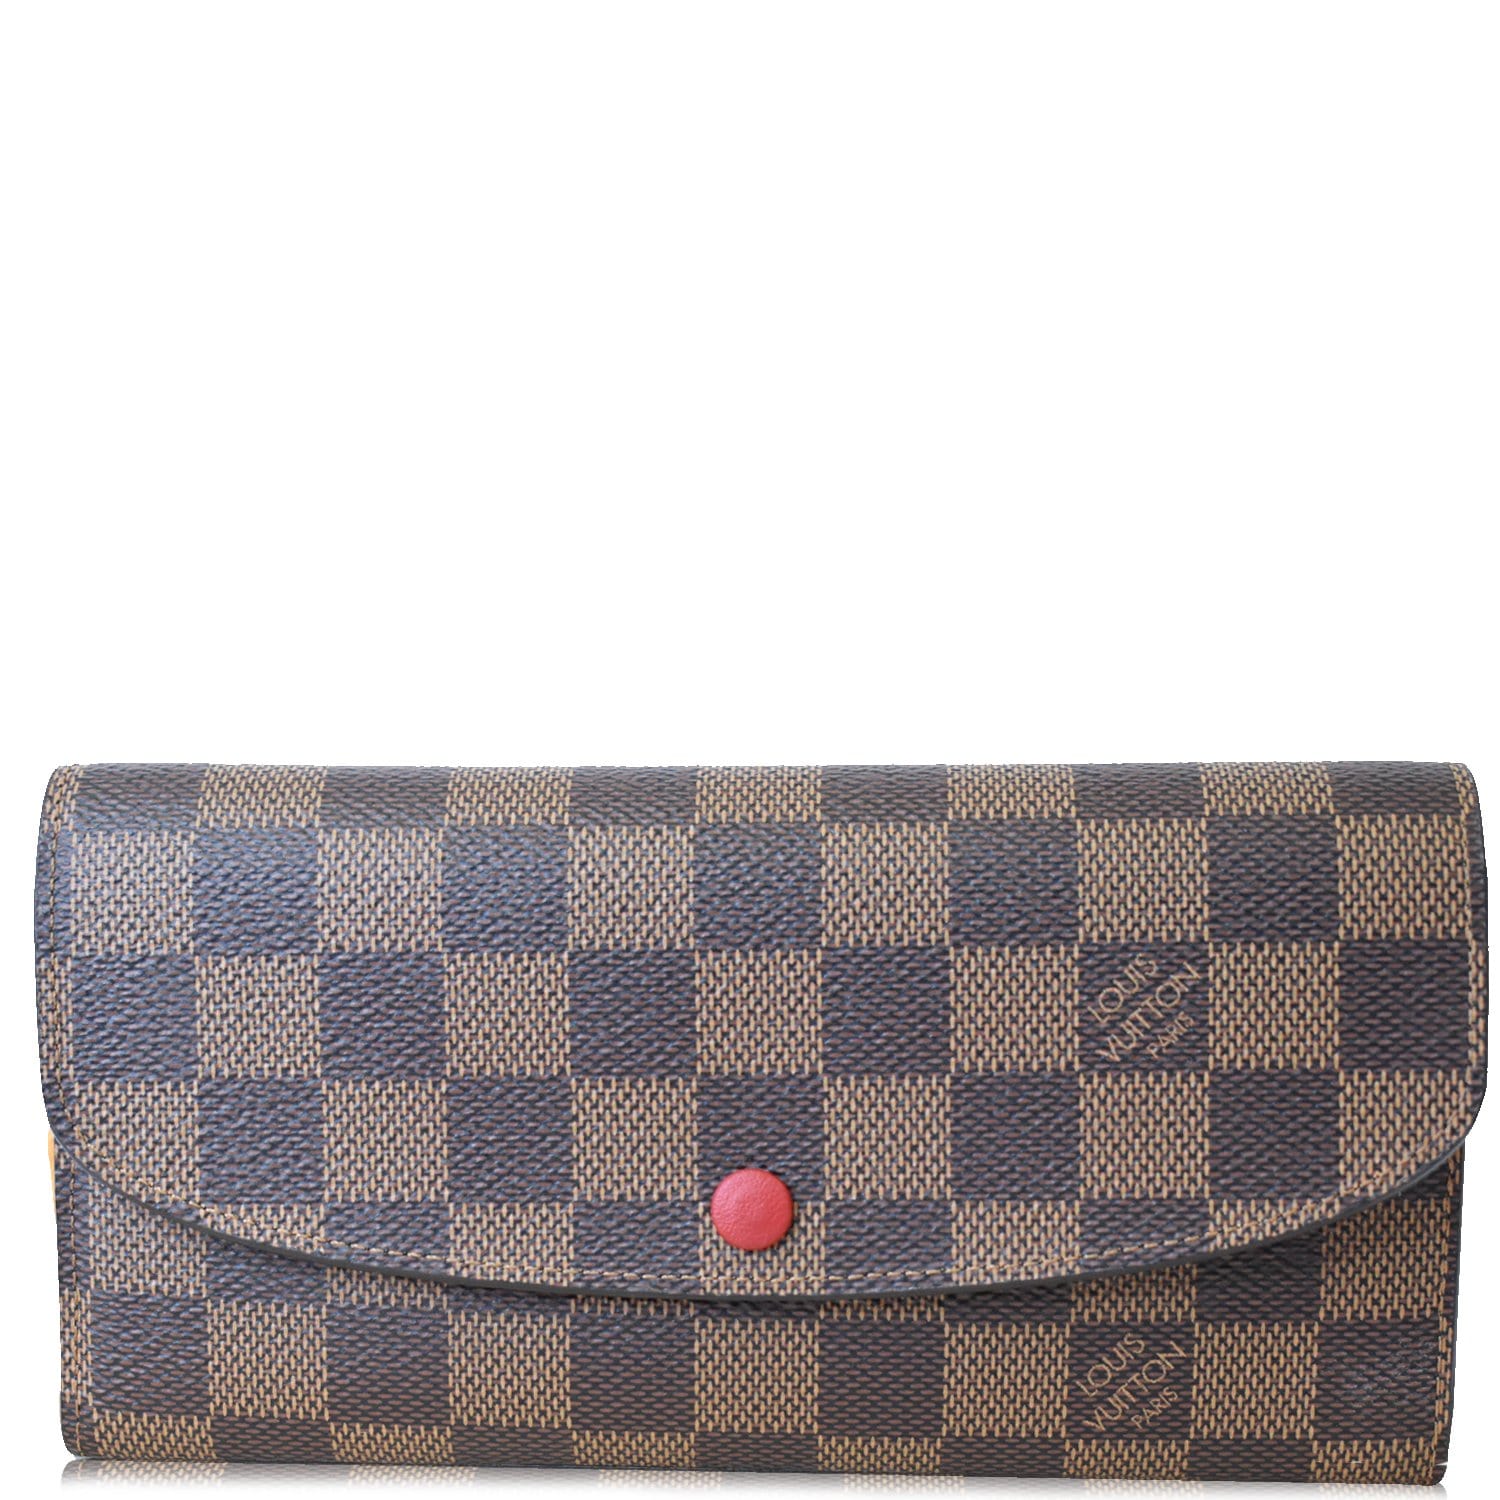 Louis Vuitton Sarah wallet Damier Ebene pattern #12